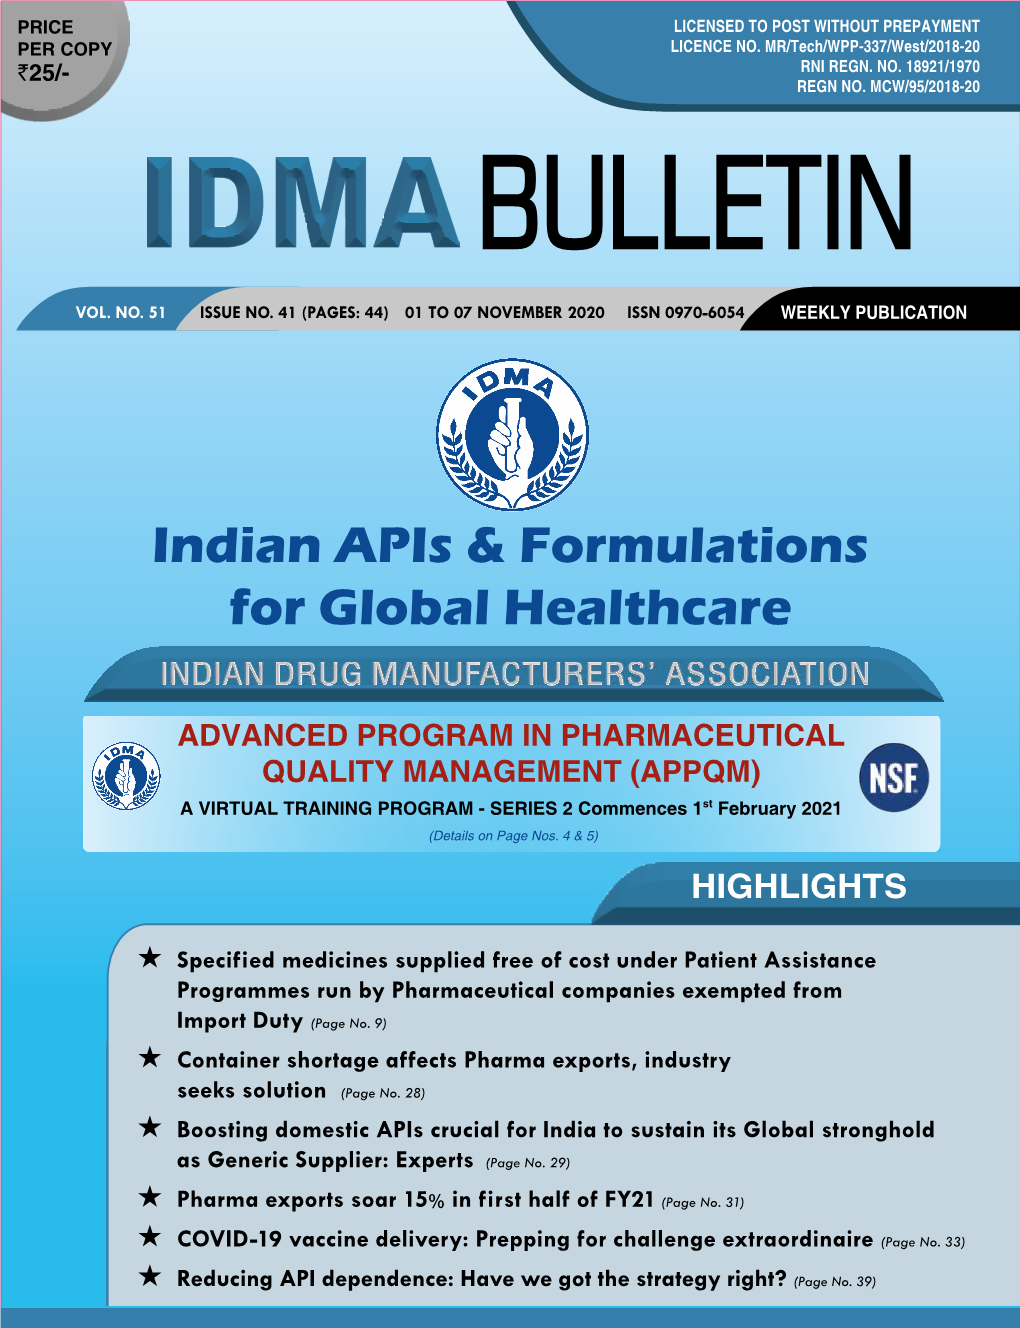 IDMA Bulletin 7Th November 2020